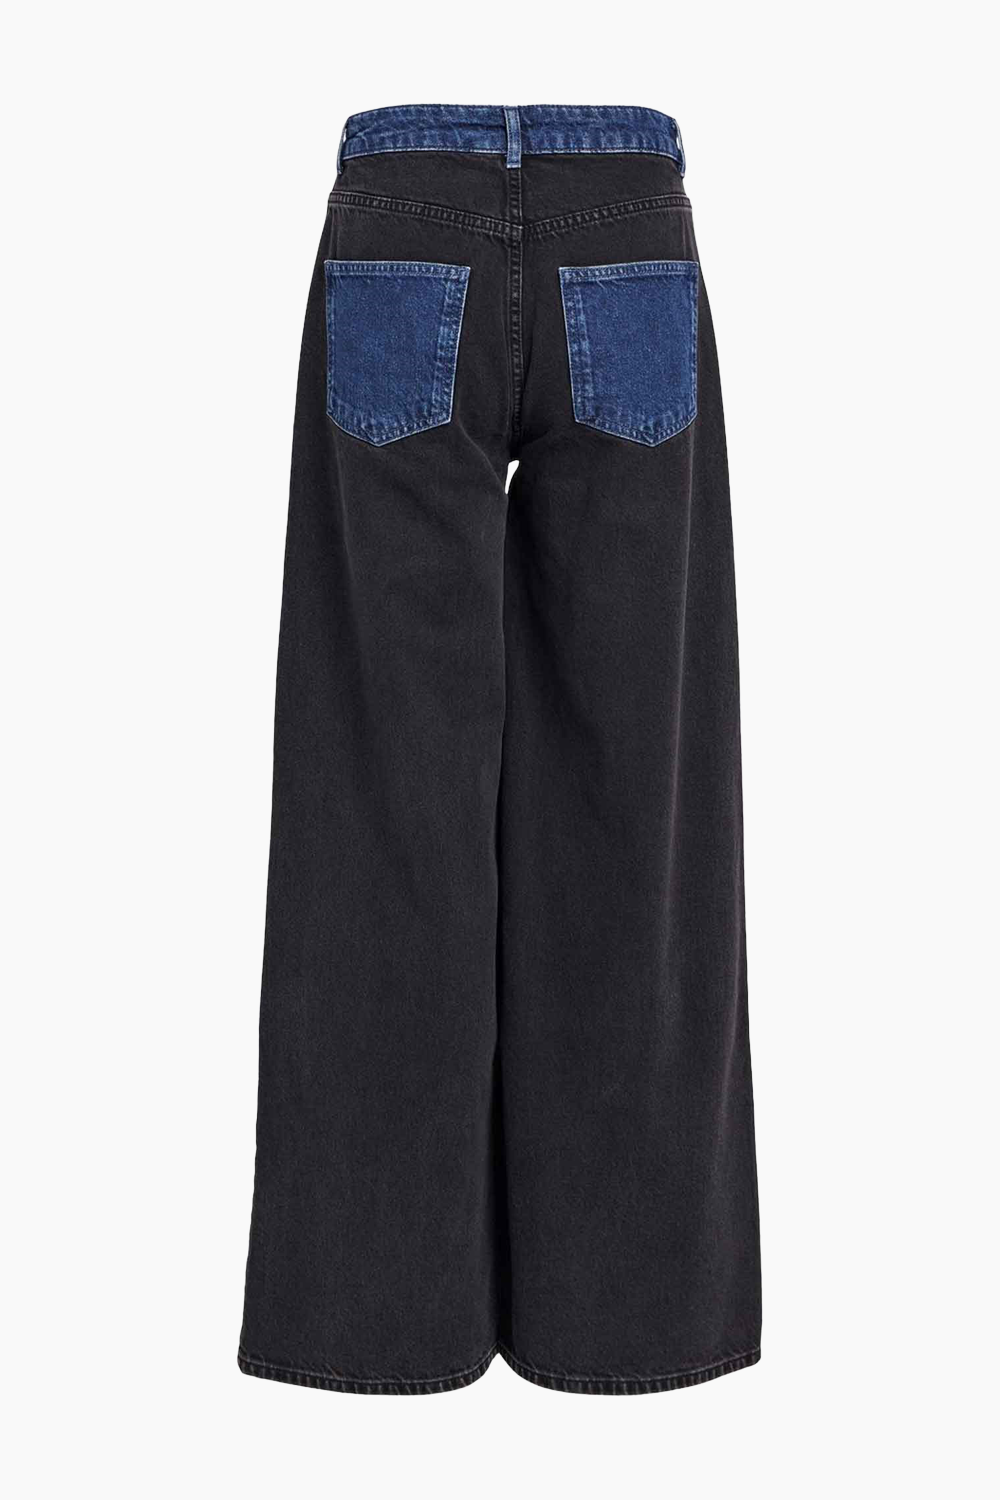 Objmoji Beate MW Wide Jeans - Black Denim/Medium Blue - Object